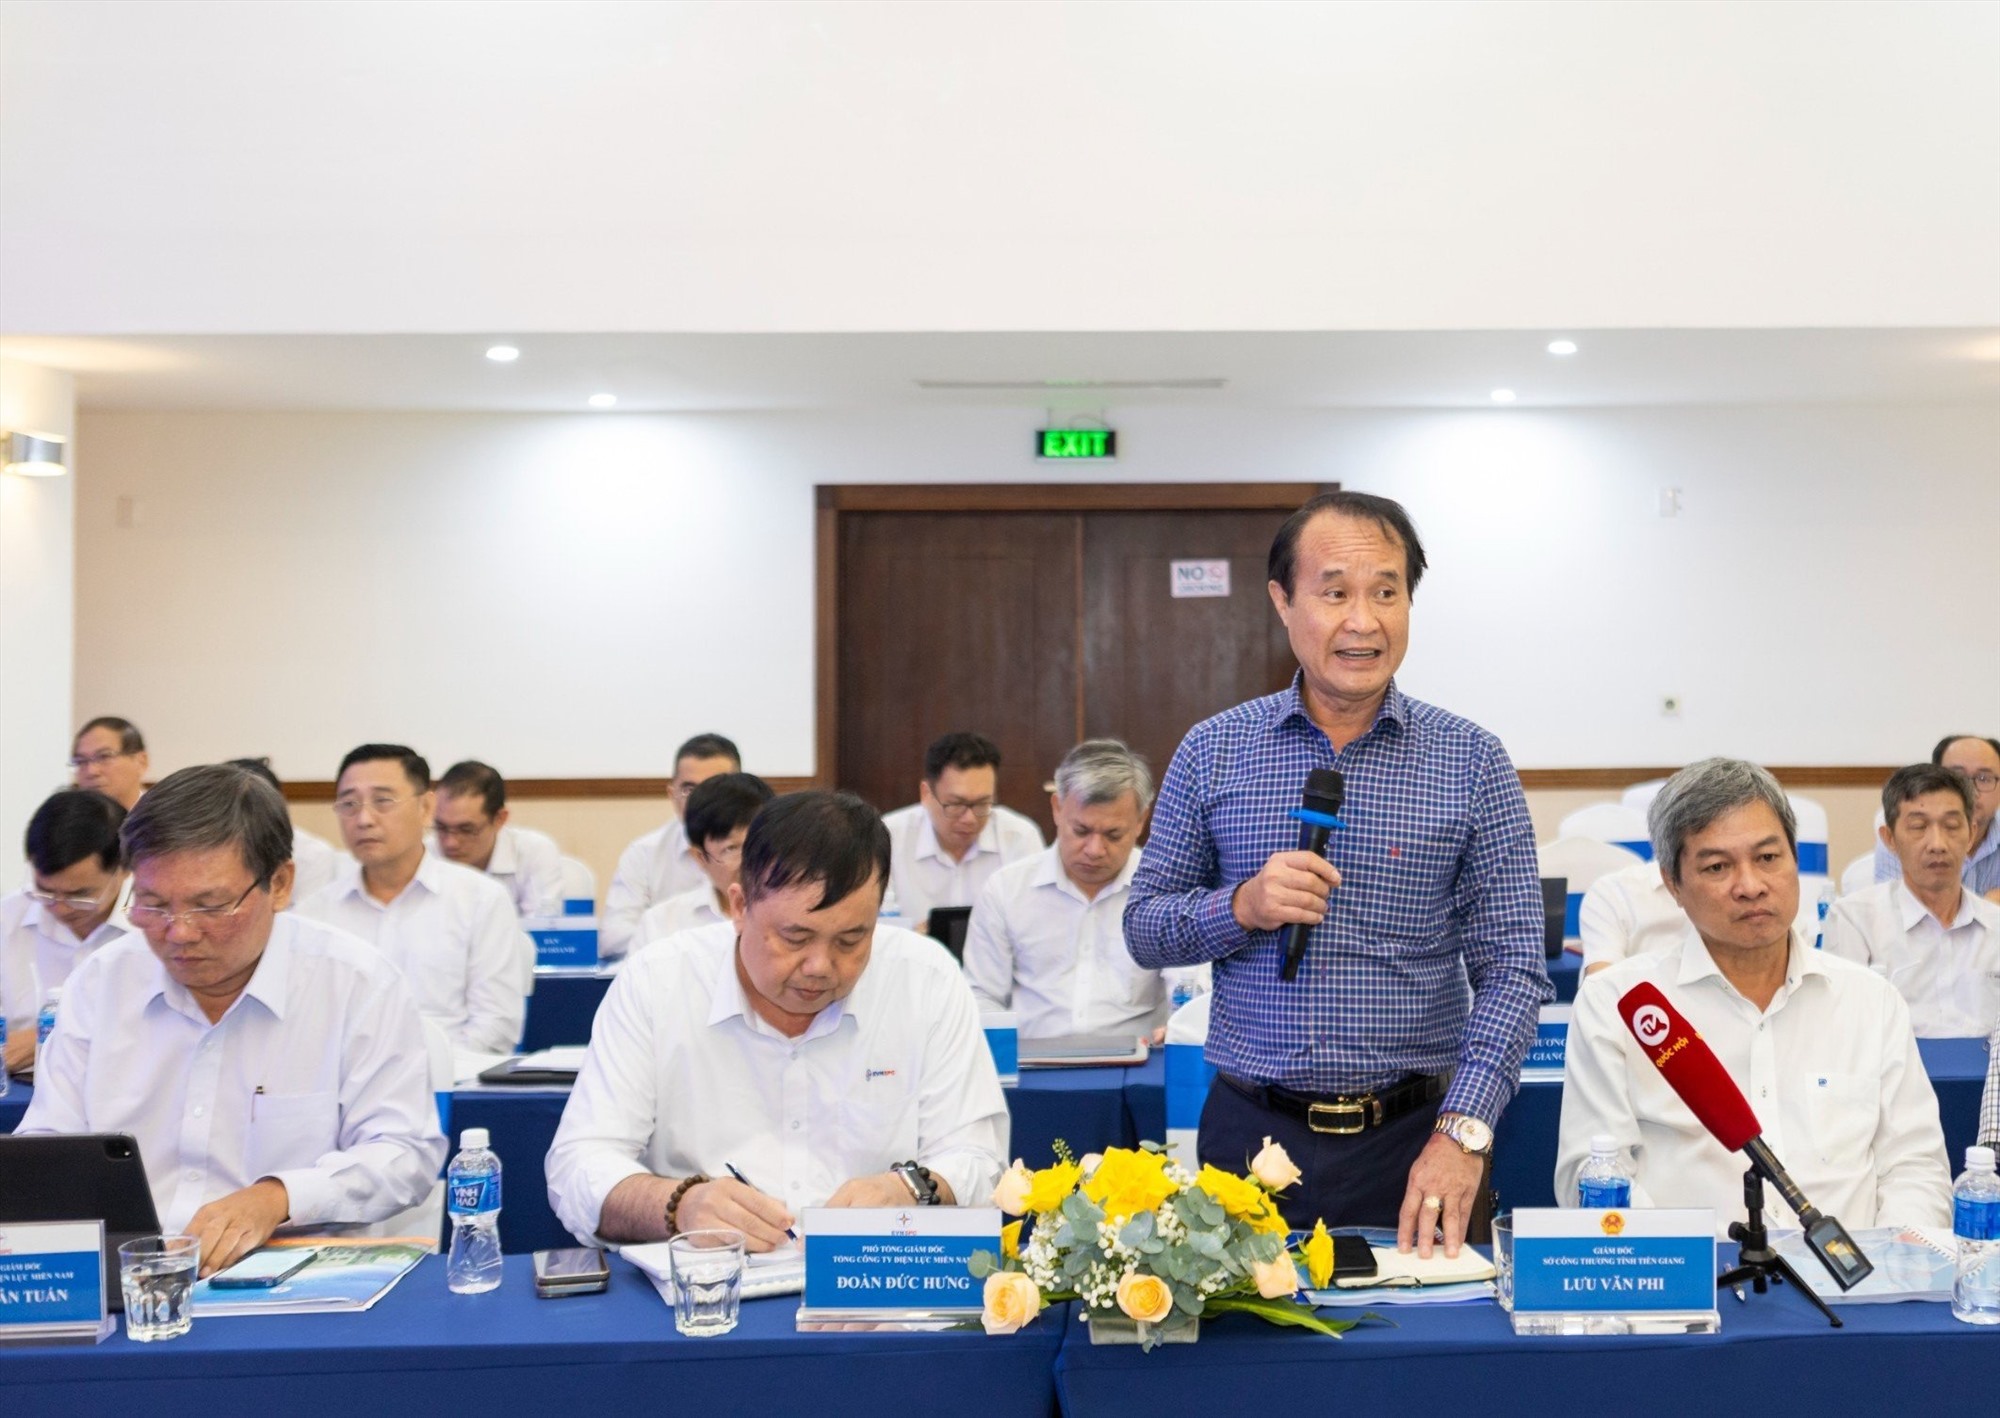 Ông Lưu Văn Phi – Giám đốc Sở Công Thương Tiền Giang - phát biểu ý kiến tại hội nghị. Ảnh: EVNSPC cung cấp.